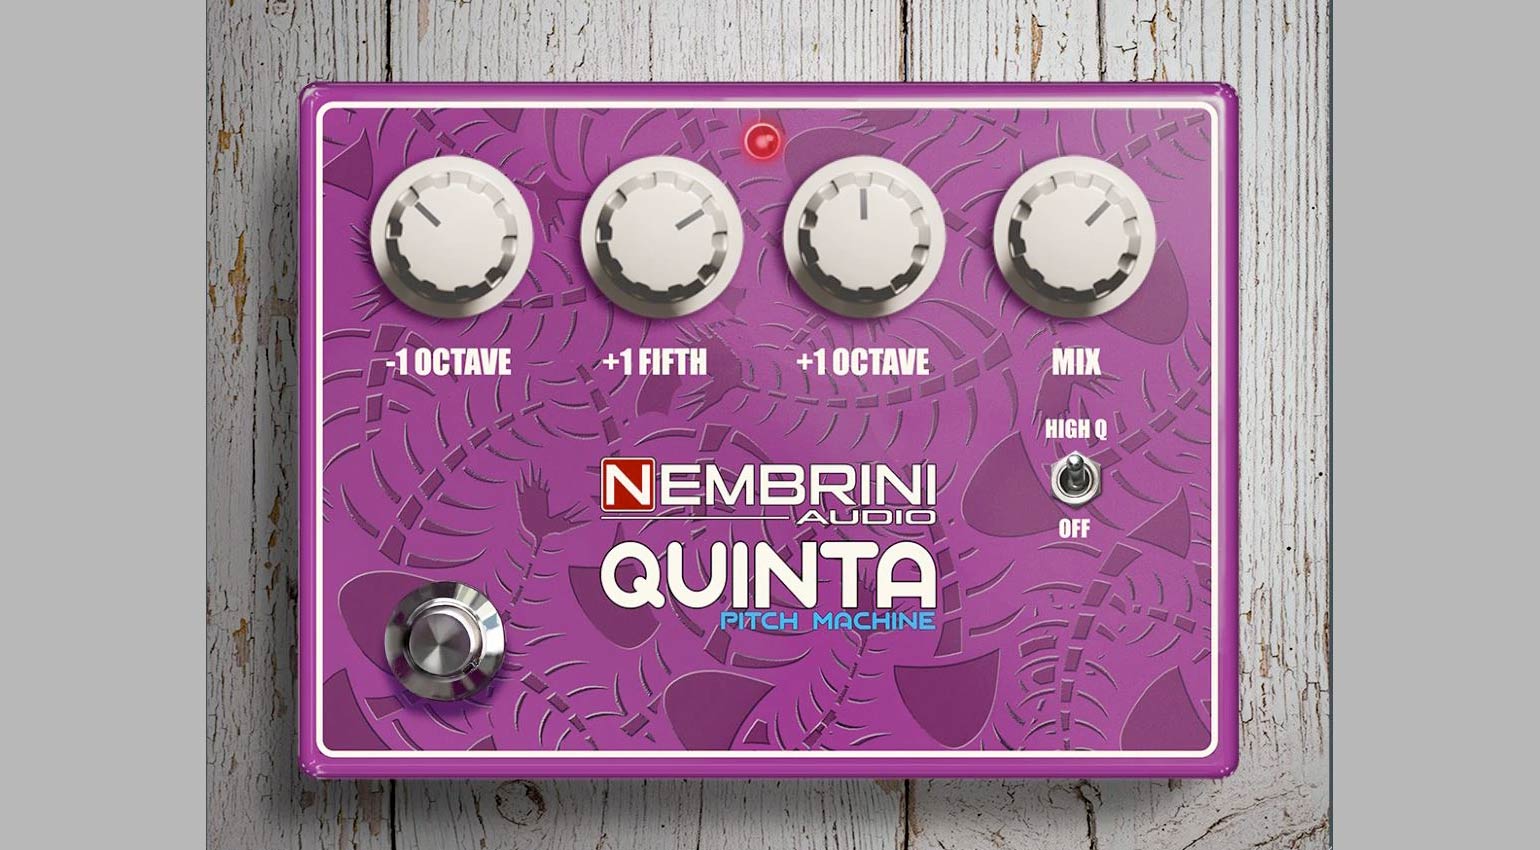 Nembrini Audio Quinta Pitch Machine